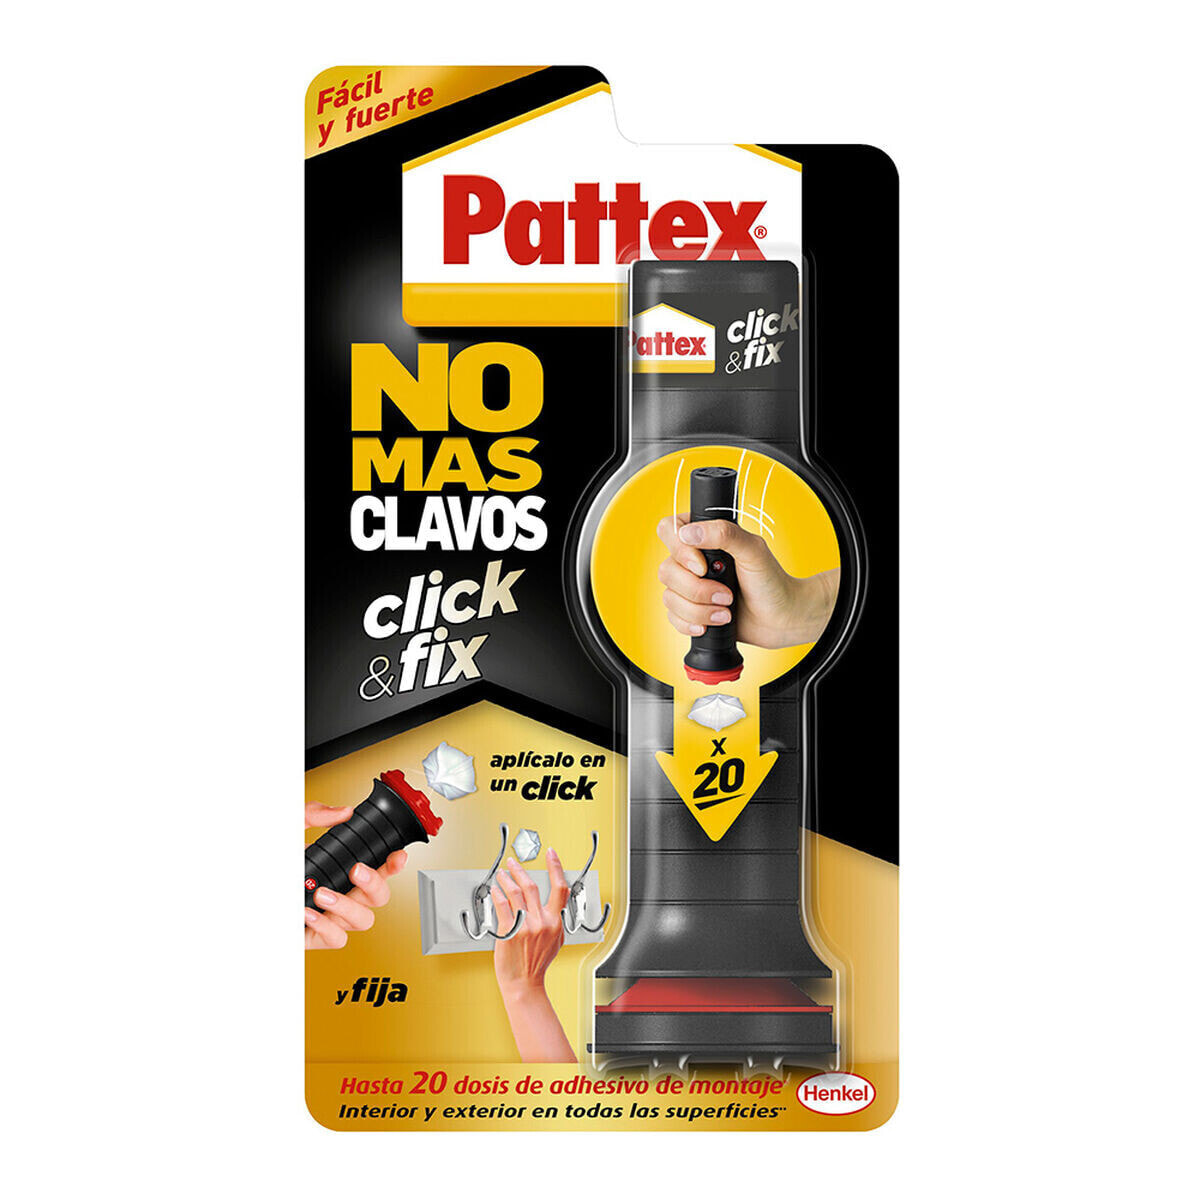 Мгновенный клей Pattex click & fix 30 g Белый Паста